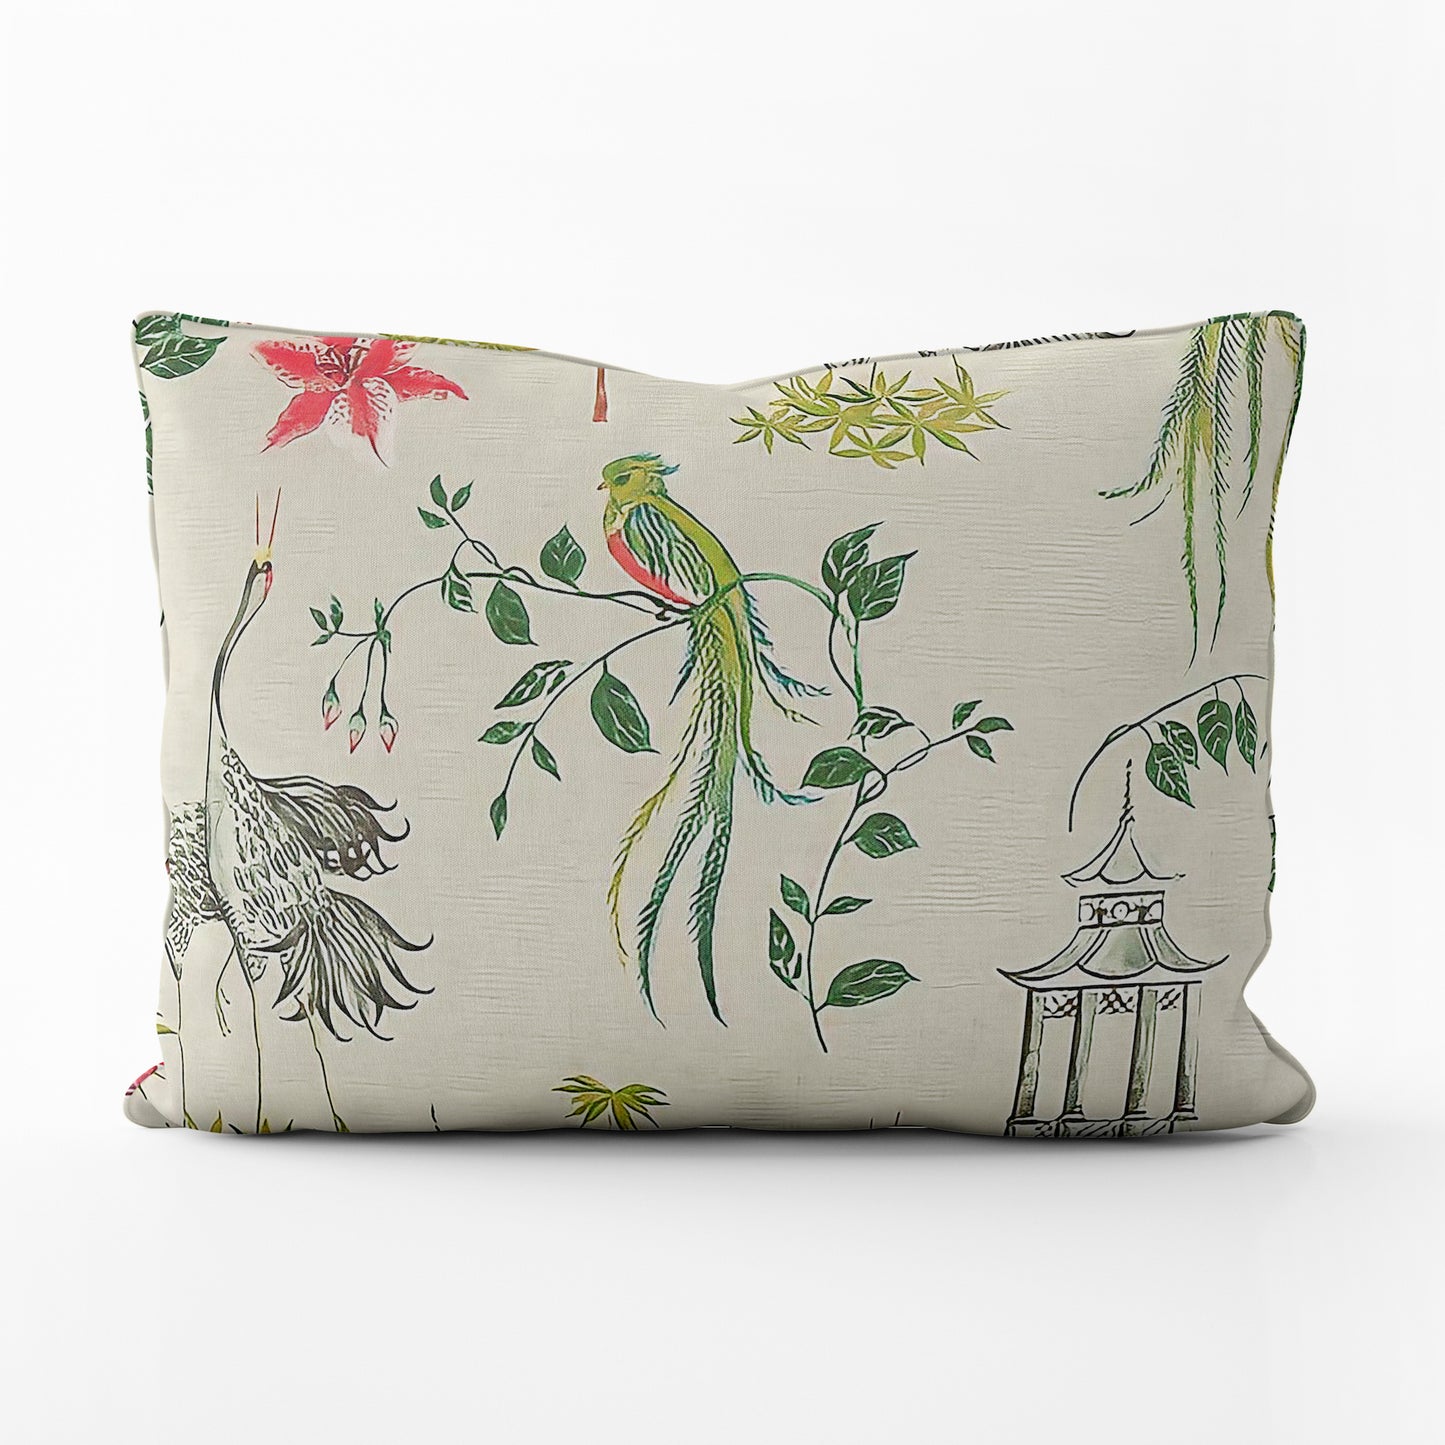 Decorative Pillows in Let It Crane Avocado Oriental Toile, Multicolor Chinoiserie